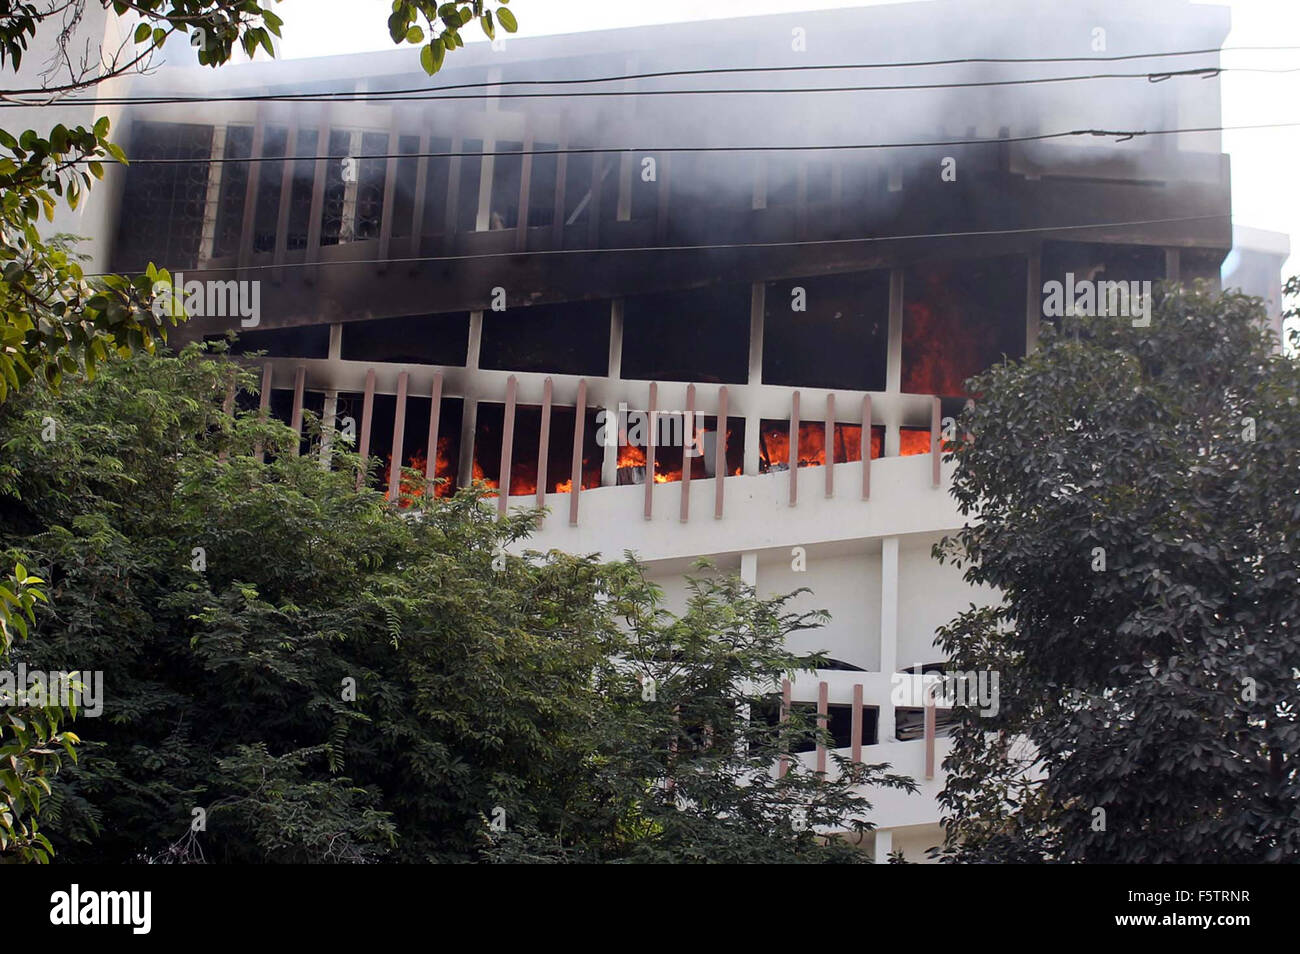 Riesige Flammen gesehen steigt hoch vom Boden der Jinnah Sindh medizinische Universität in Karachi auf Montag, 9. November 2015. Quellen zufolge Feuer brach bei Rekord Zimmer und verschlungen in mehrere Etagen des Gebäudes Jinnah Sindh Medical University. Stockfoto